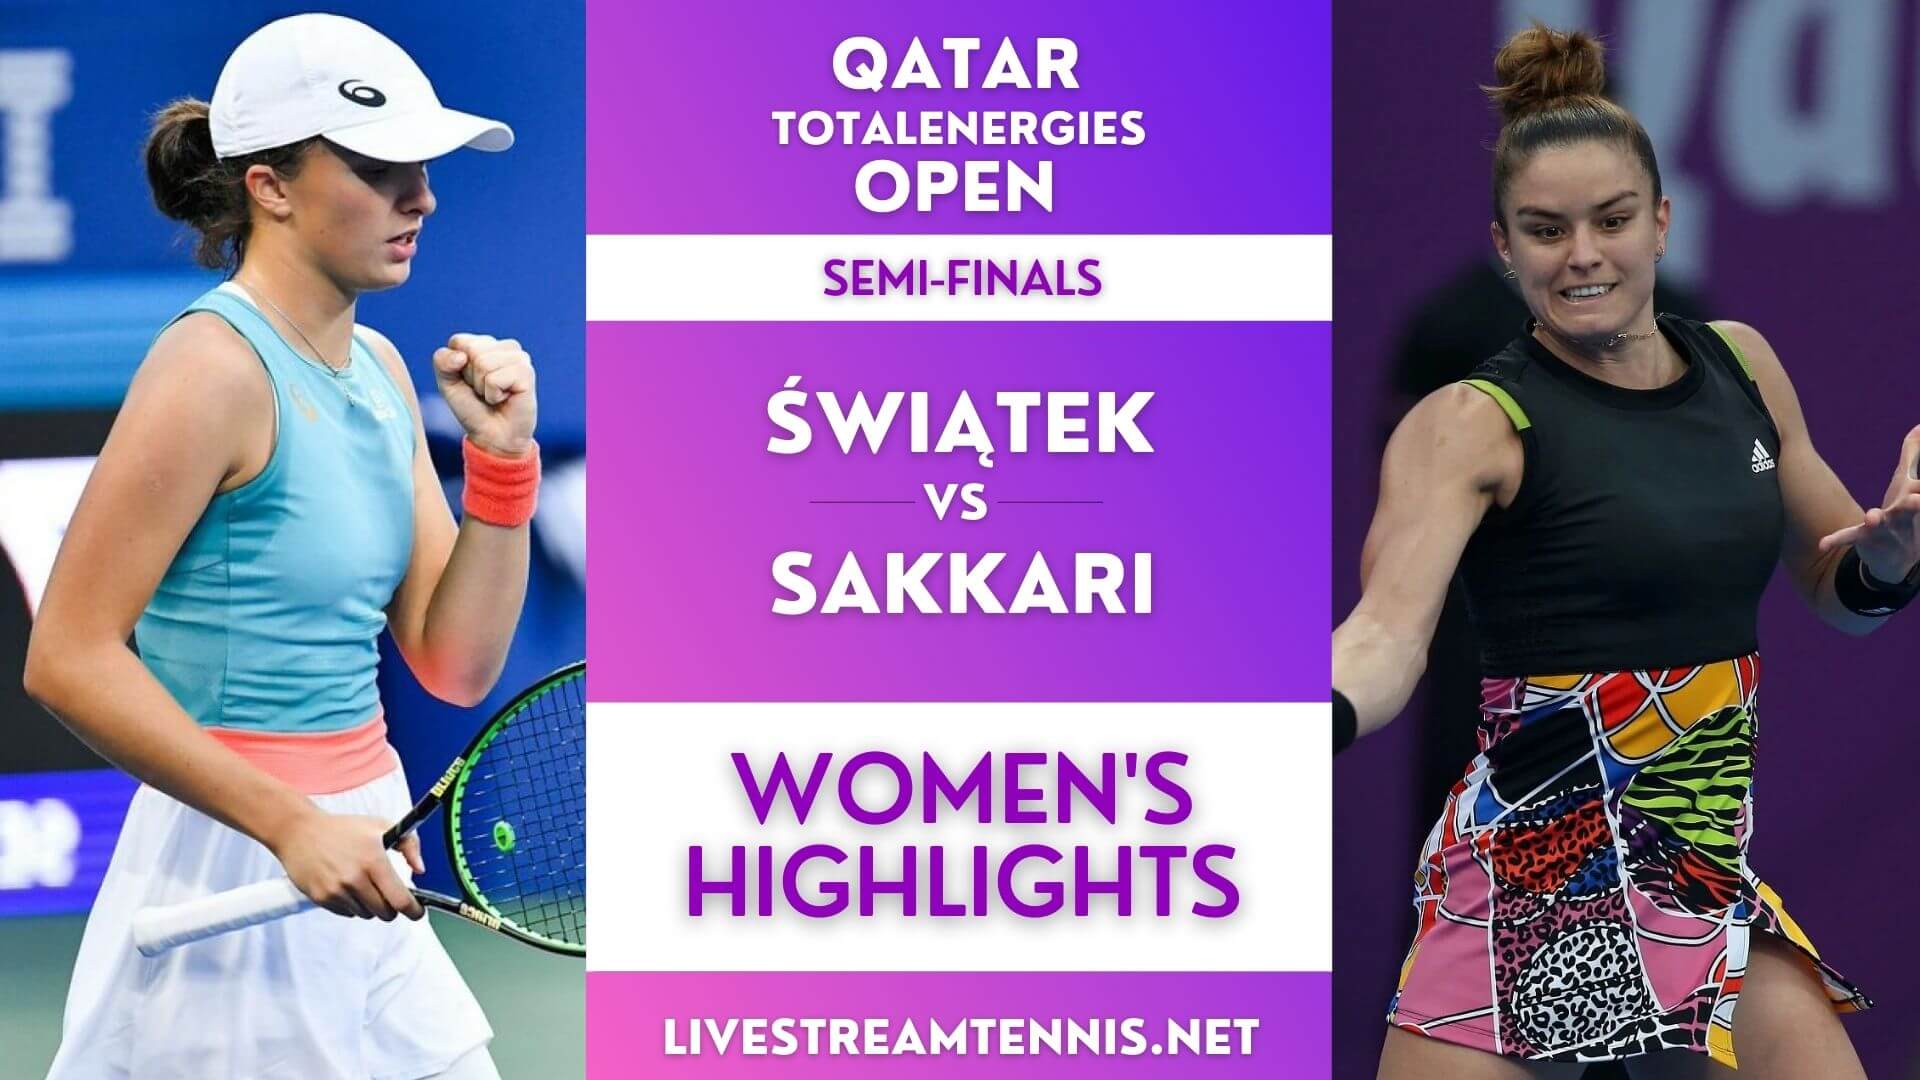 Qatar Open Ladies Semi Final 1 Highlights 2022